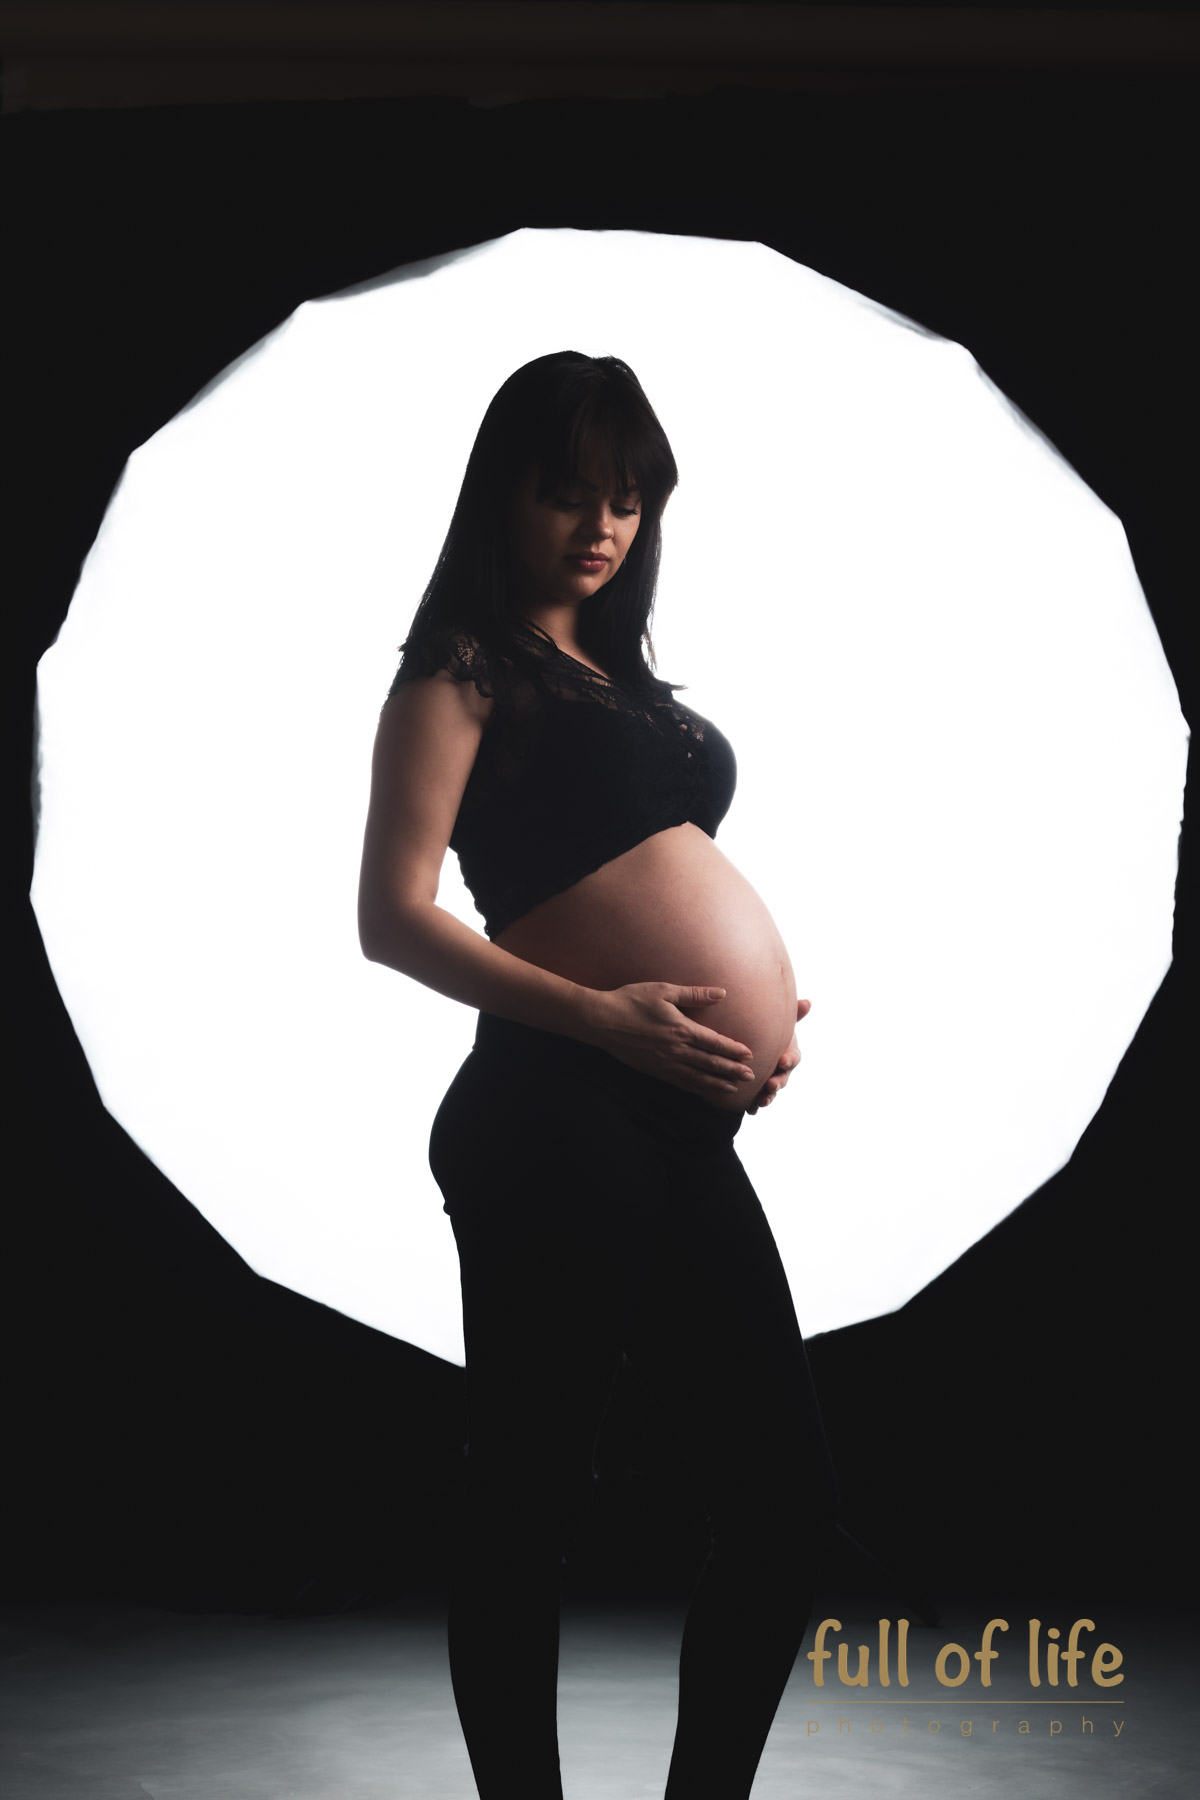 Sevizio fotografico maternità bologna